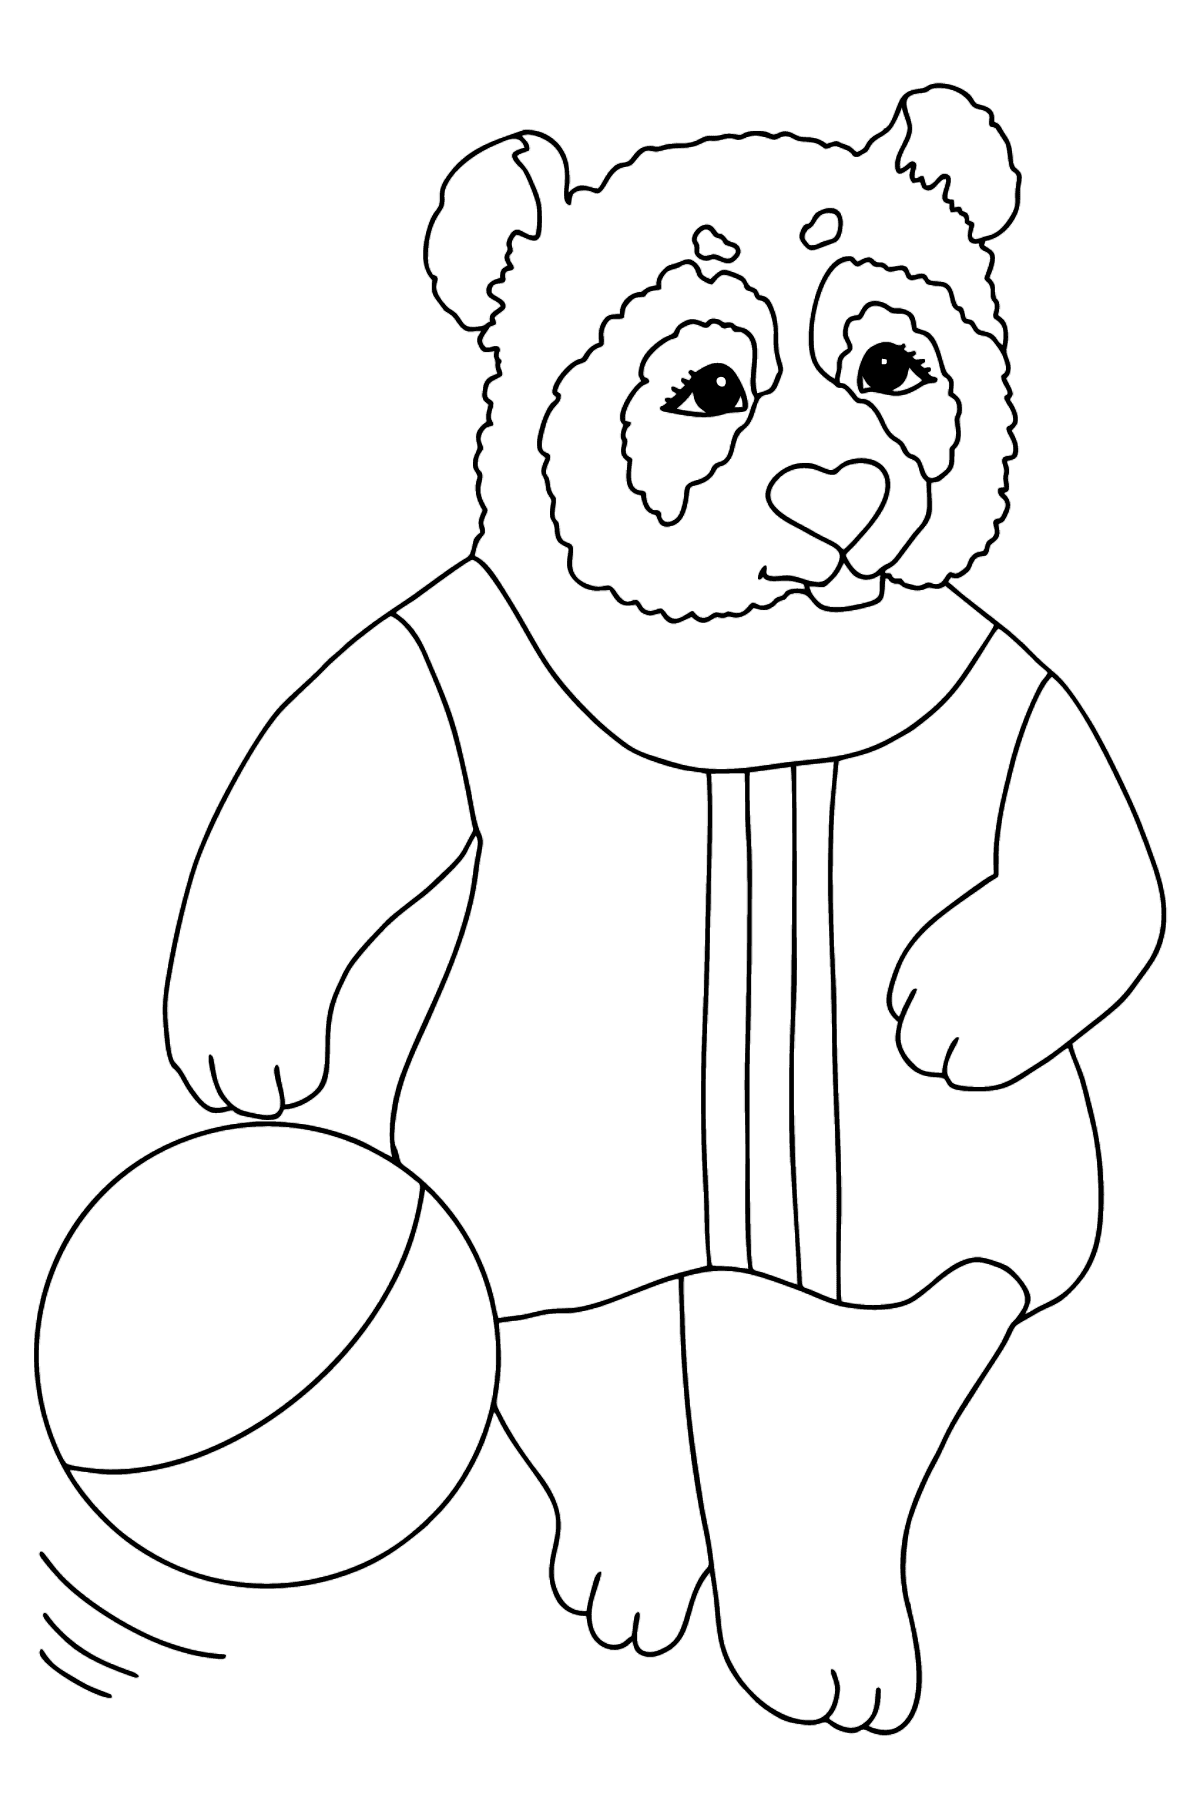 Розмальовка Панда для малюків (складно) - Розмальовки для дітей